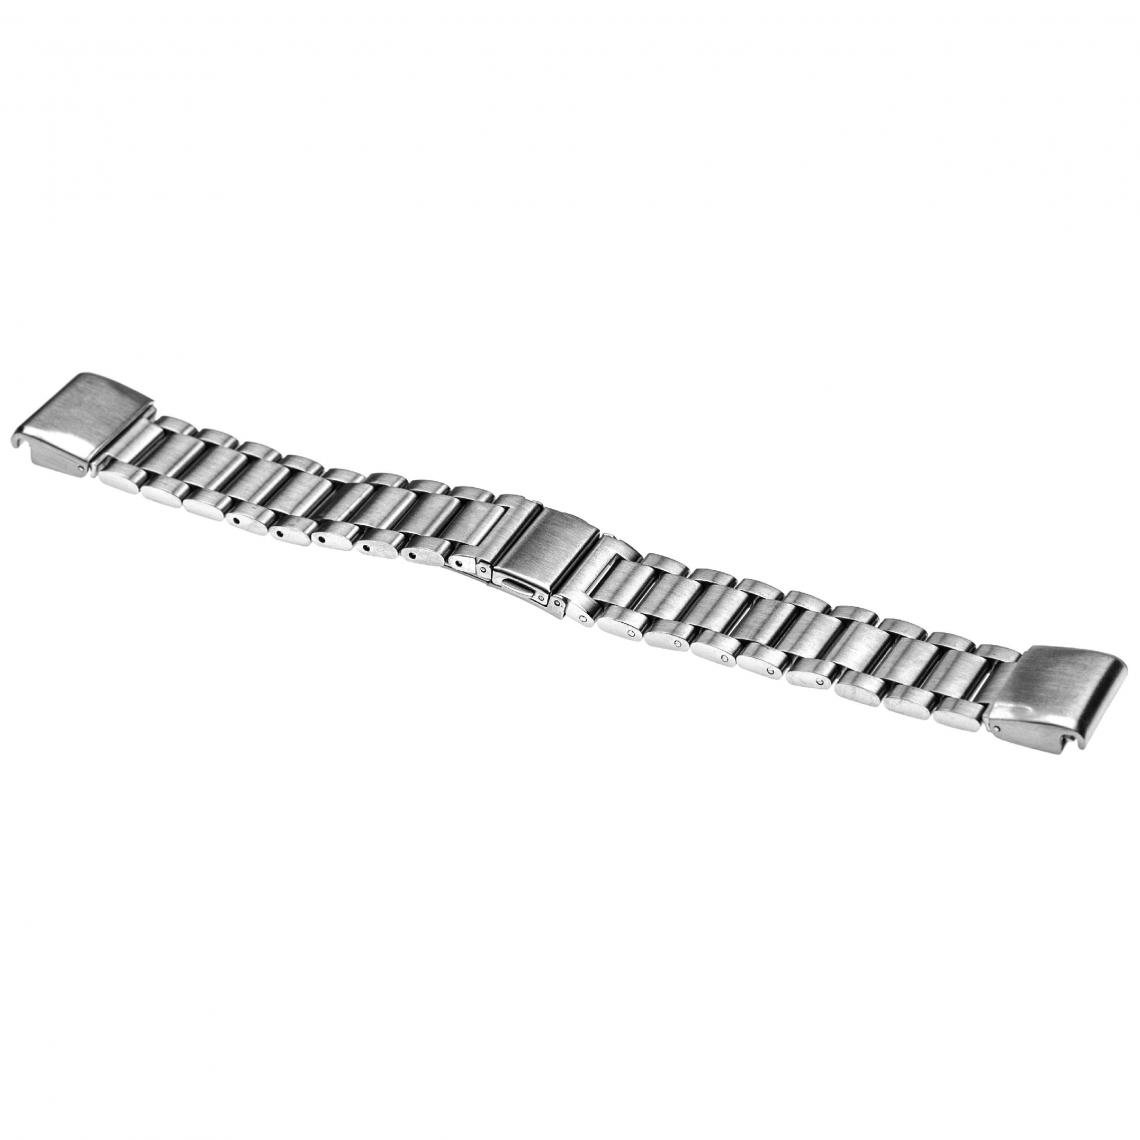 Vhbw - vhbw bracelet compatible avec Garmin Fenix 5s, 5S Plus, 6S montre connectée - 19 cm acier inoxydable argent - Accessoires montres connectées